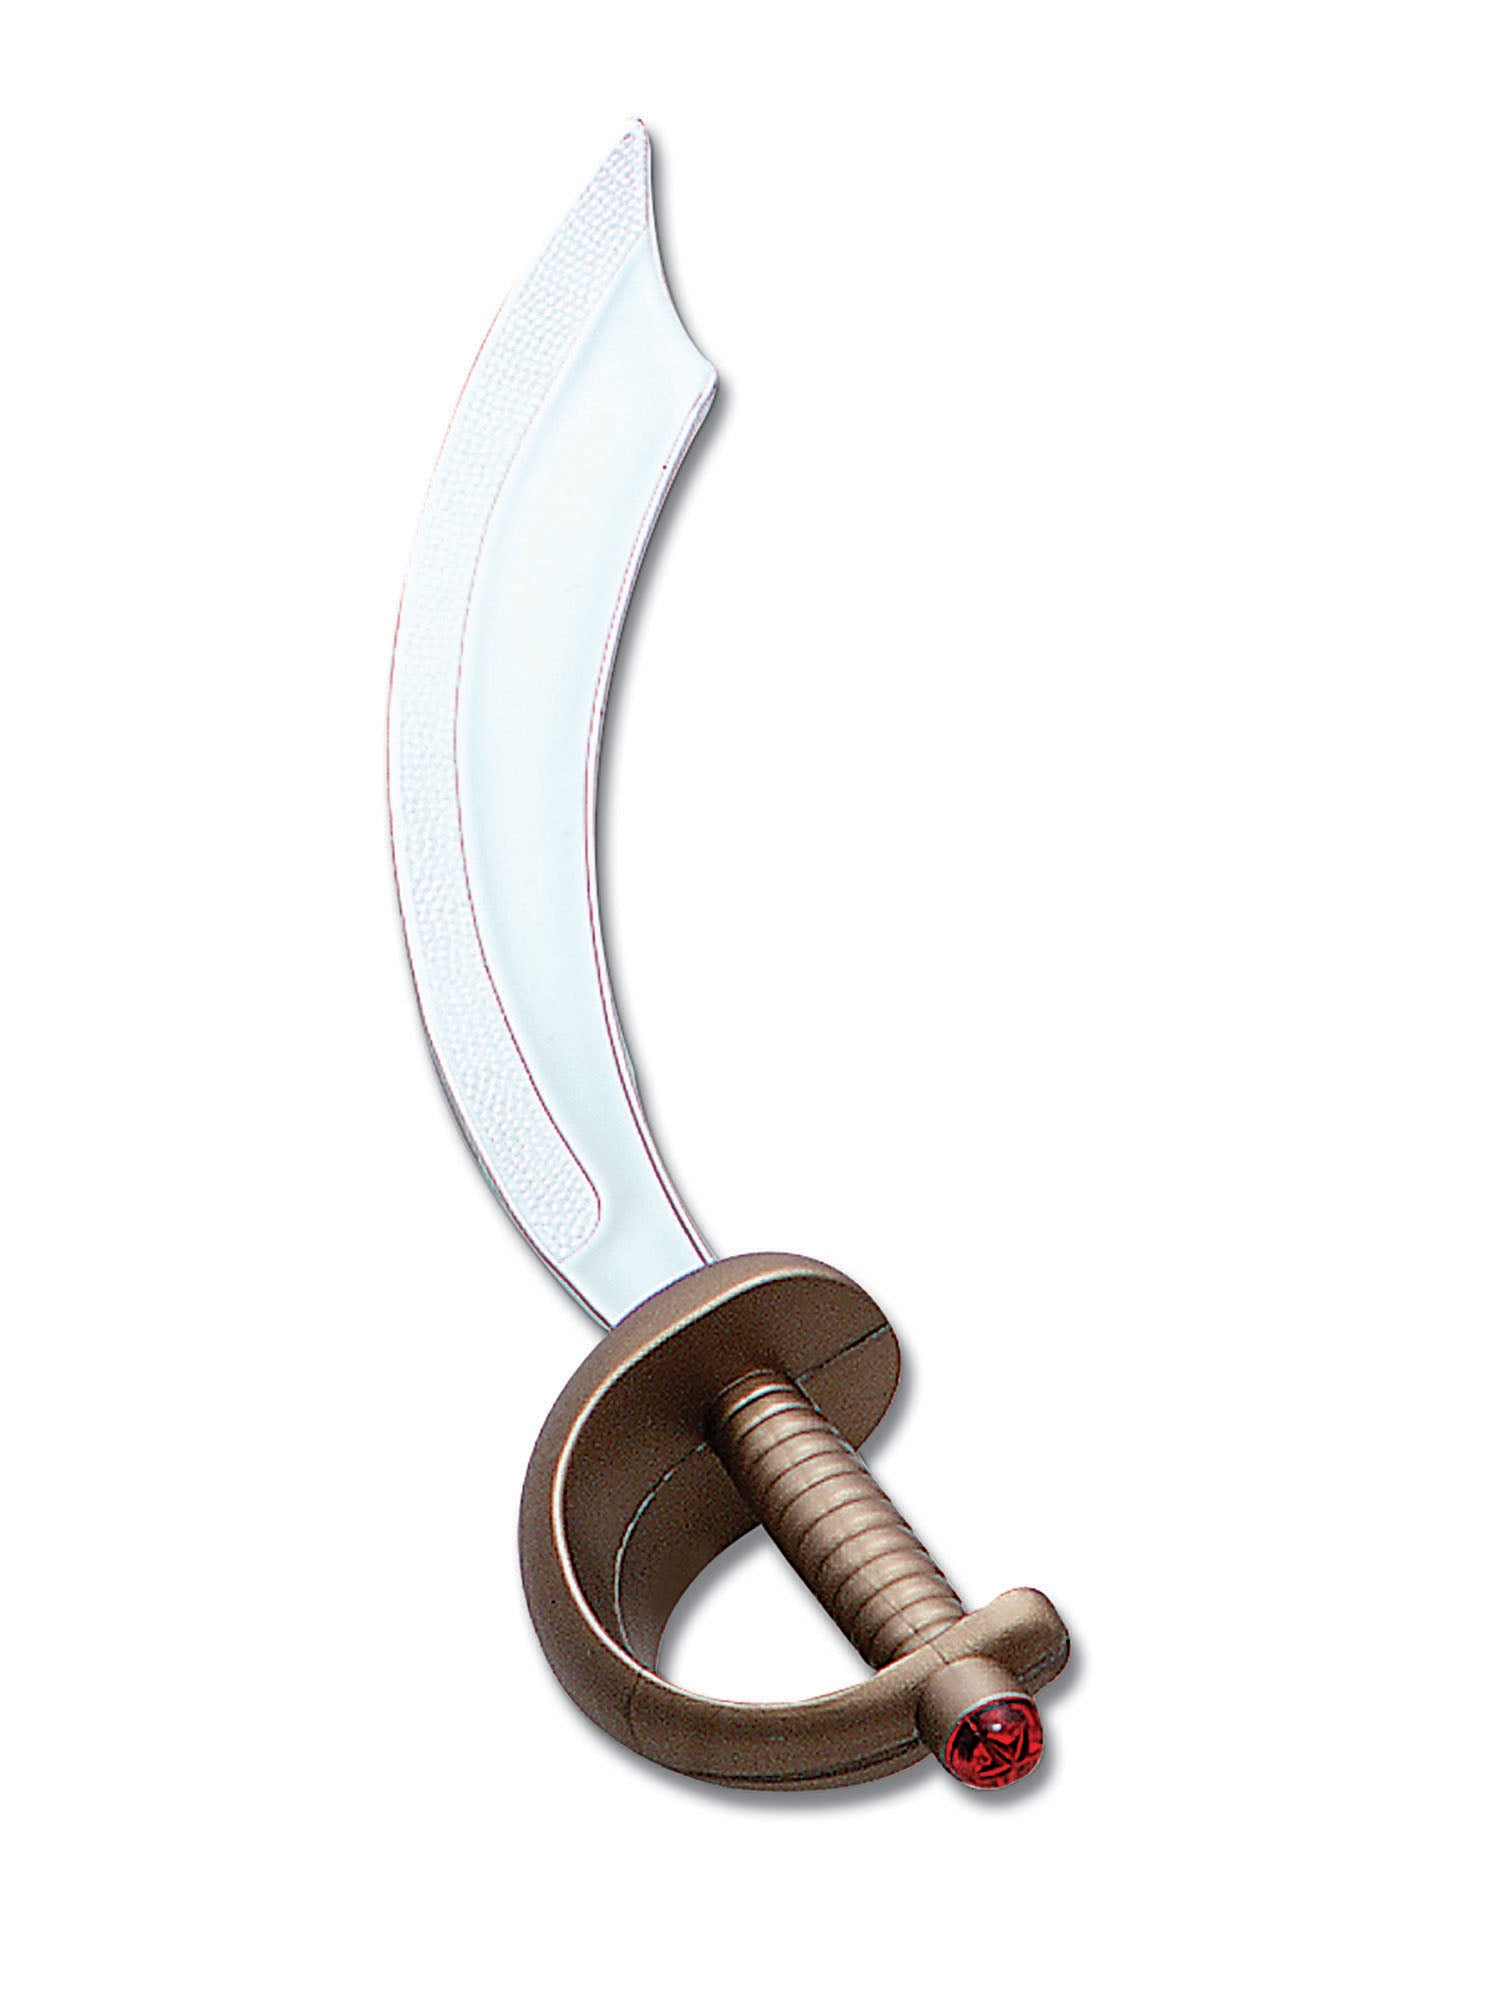 Arabian or Pirate Sword